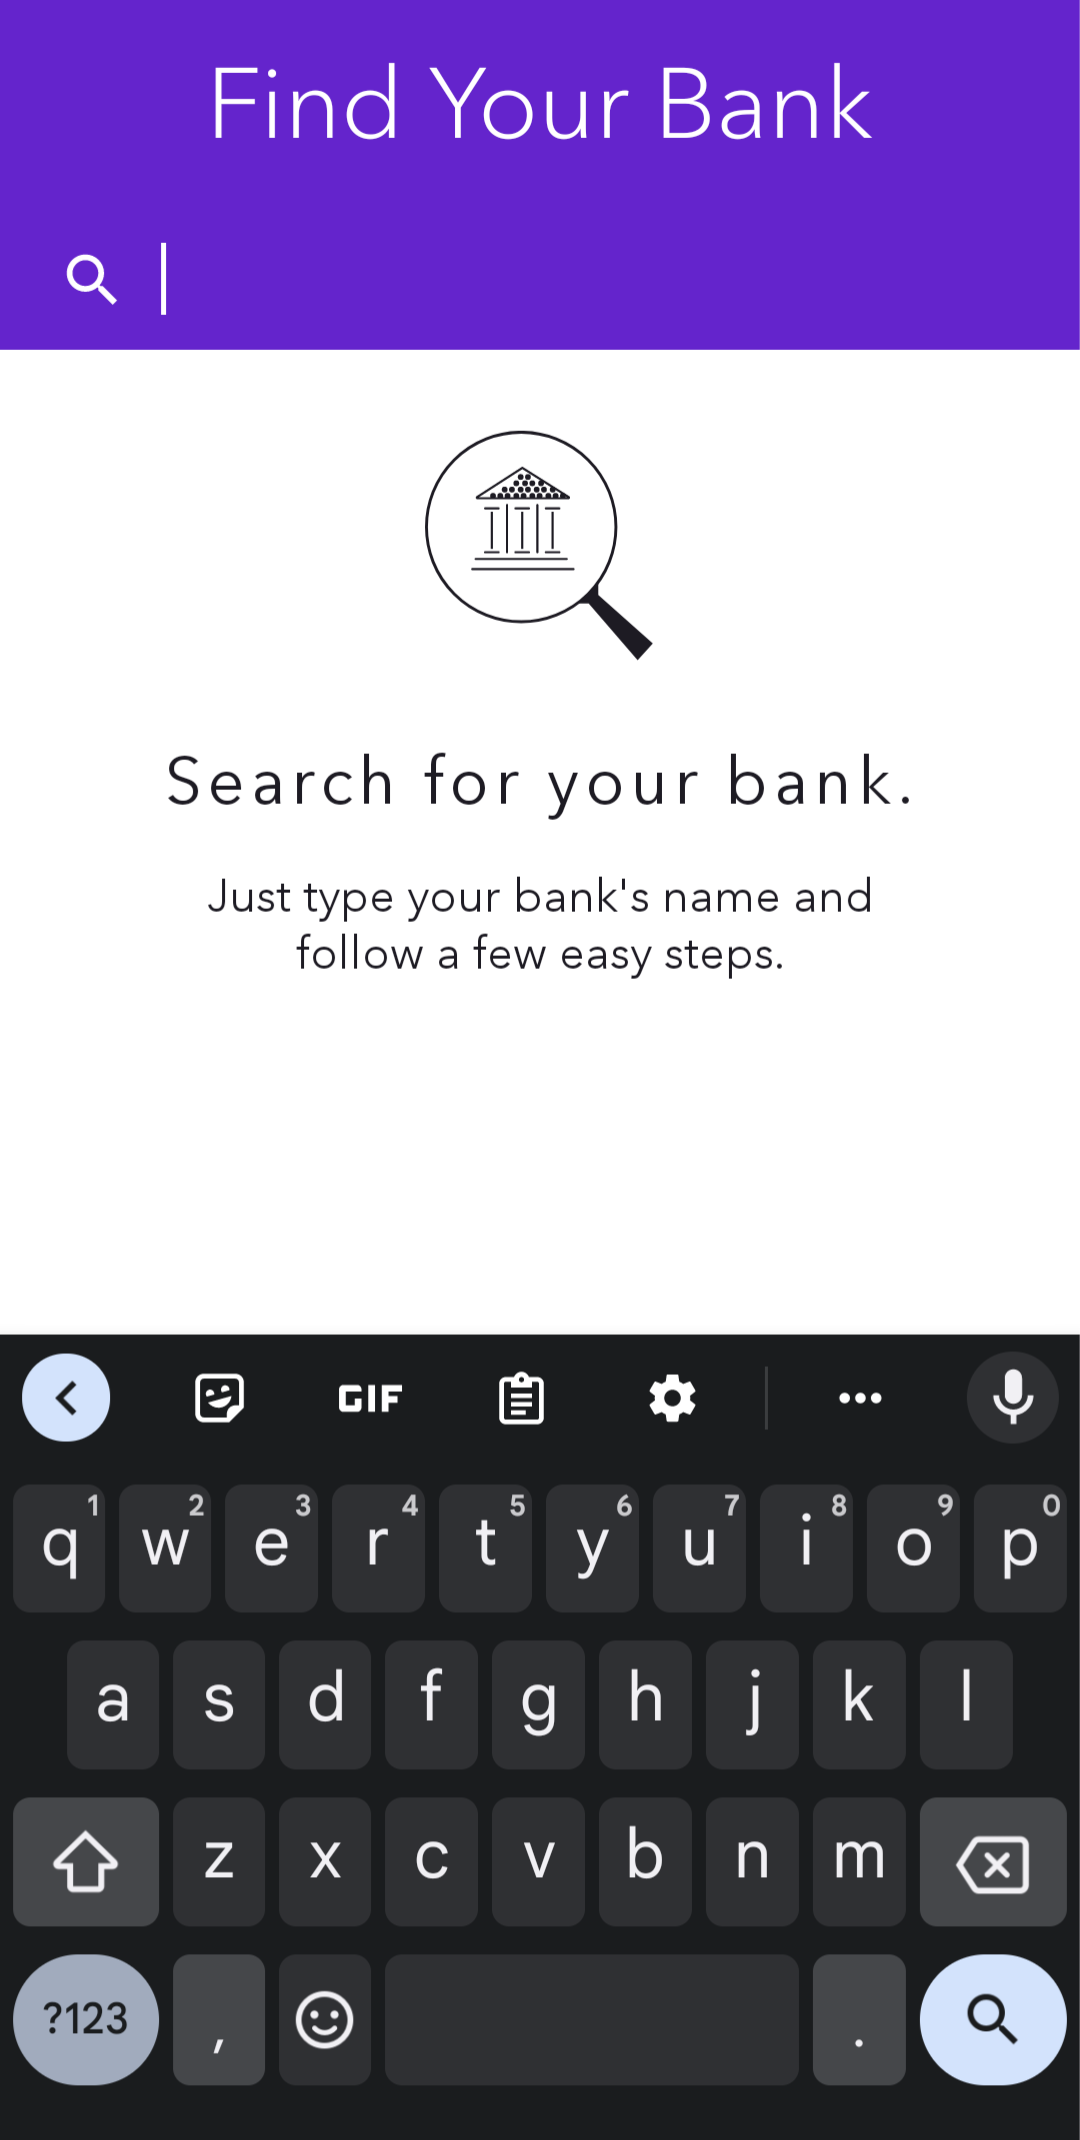 Halaman Temukan Bank Anda di aplikasi Zelle